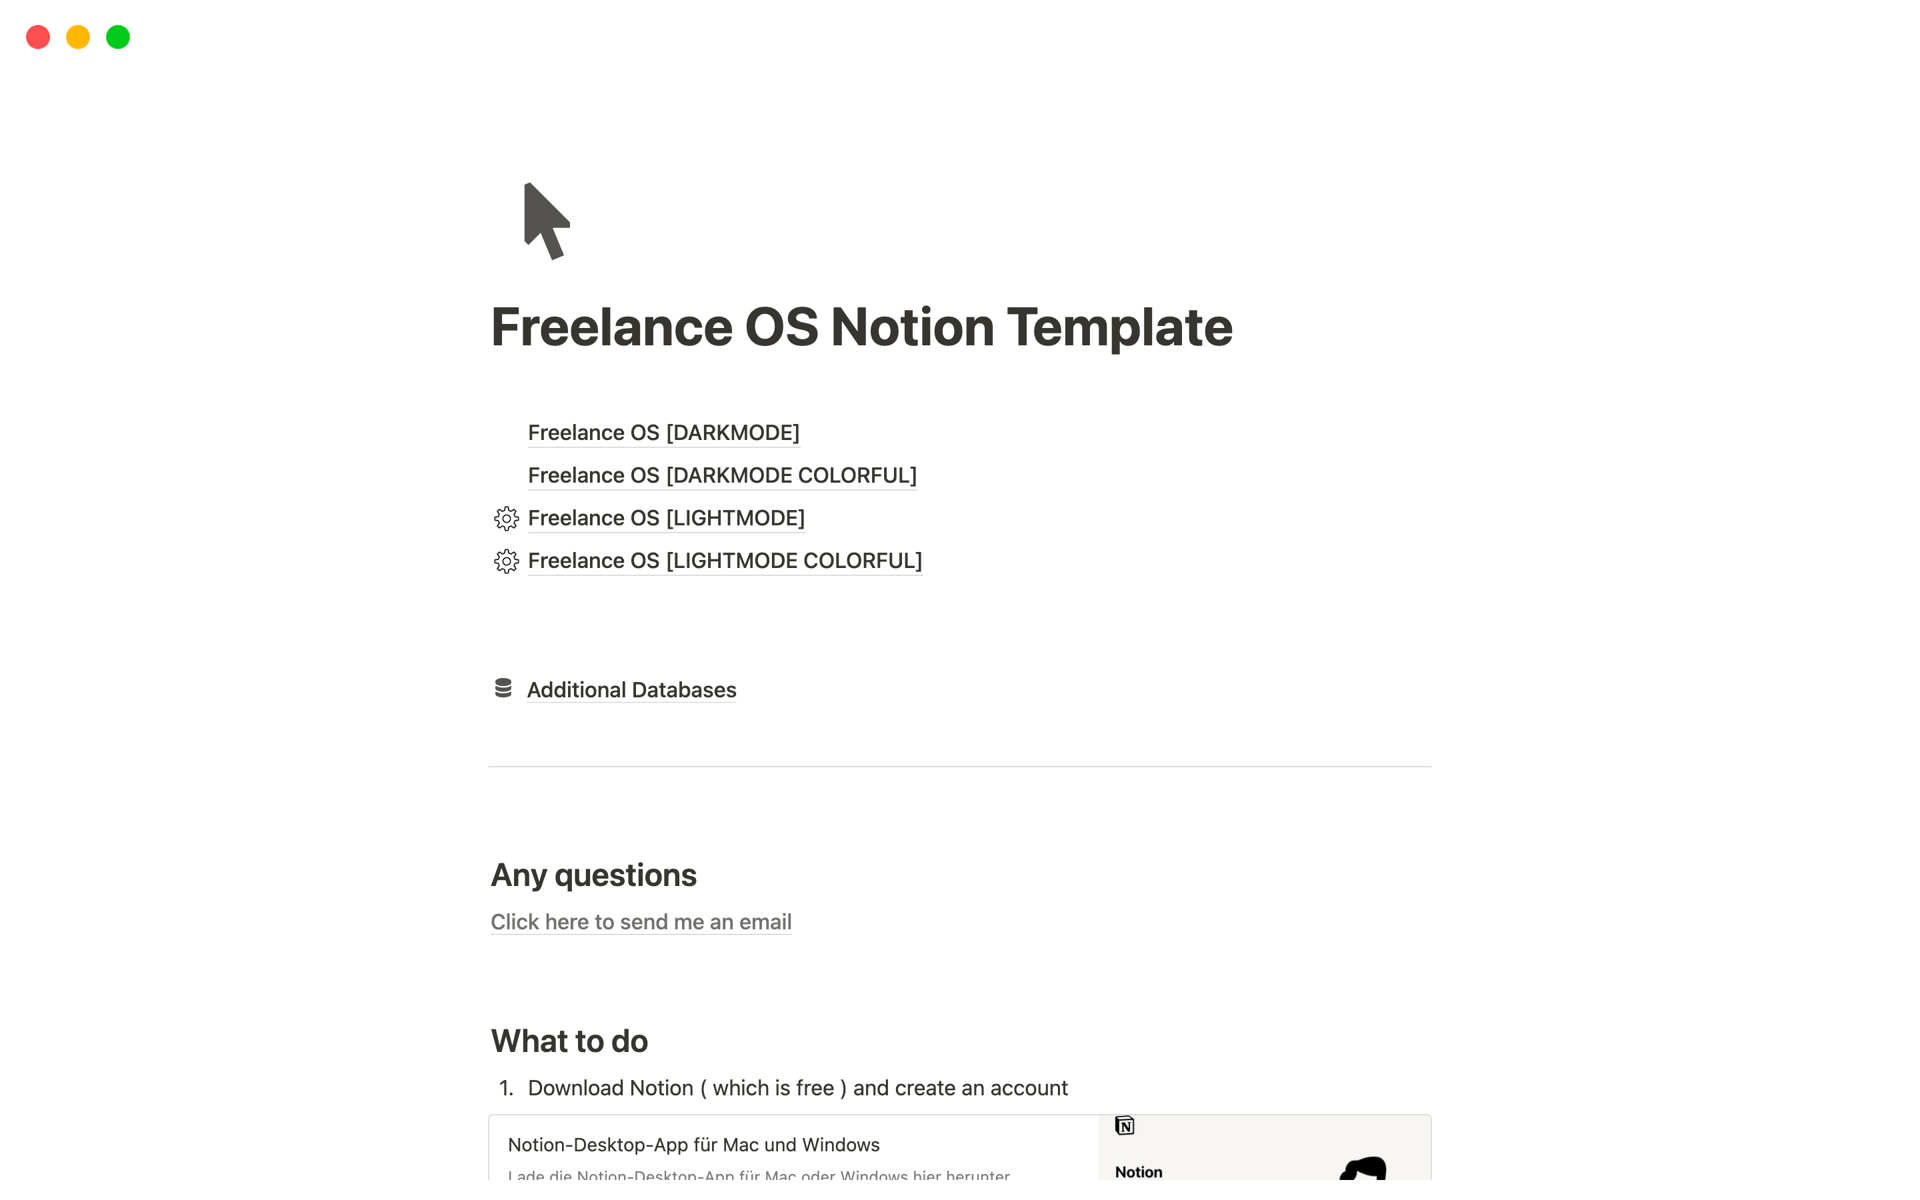 Vista previa de una plantilla para Freelance Pro OS